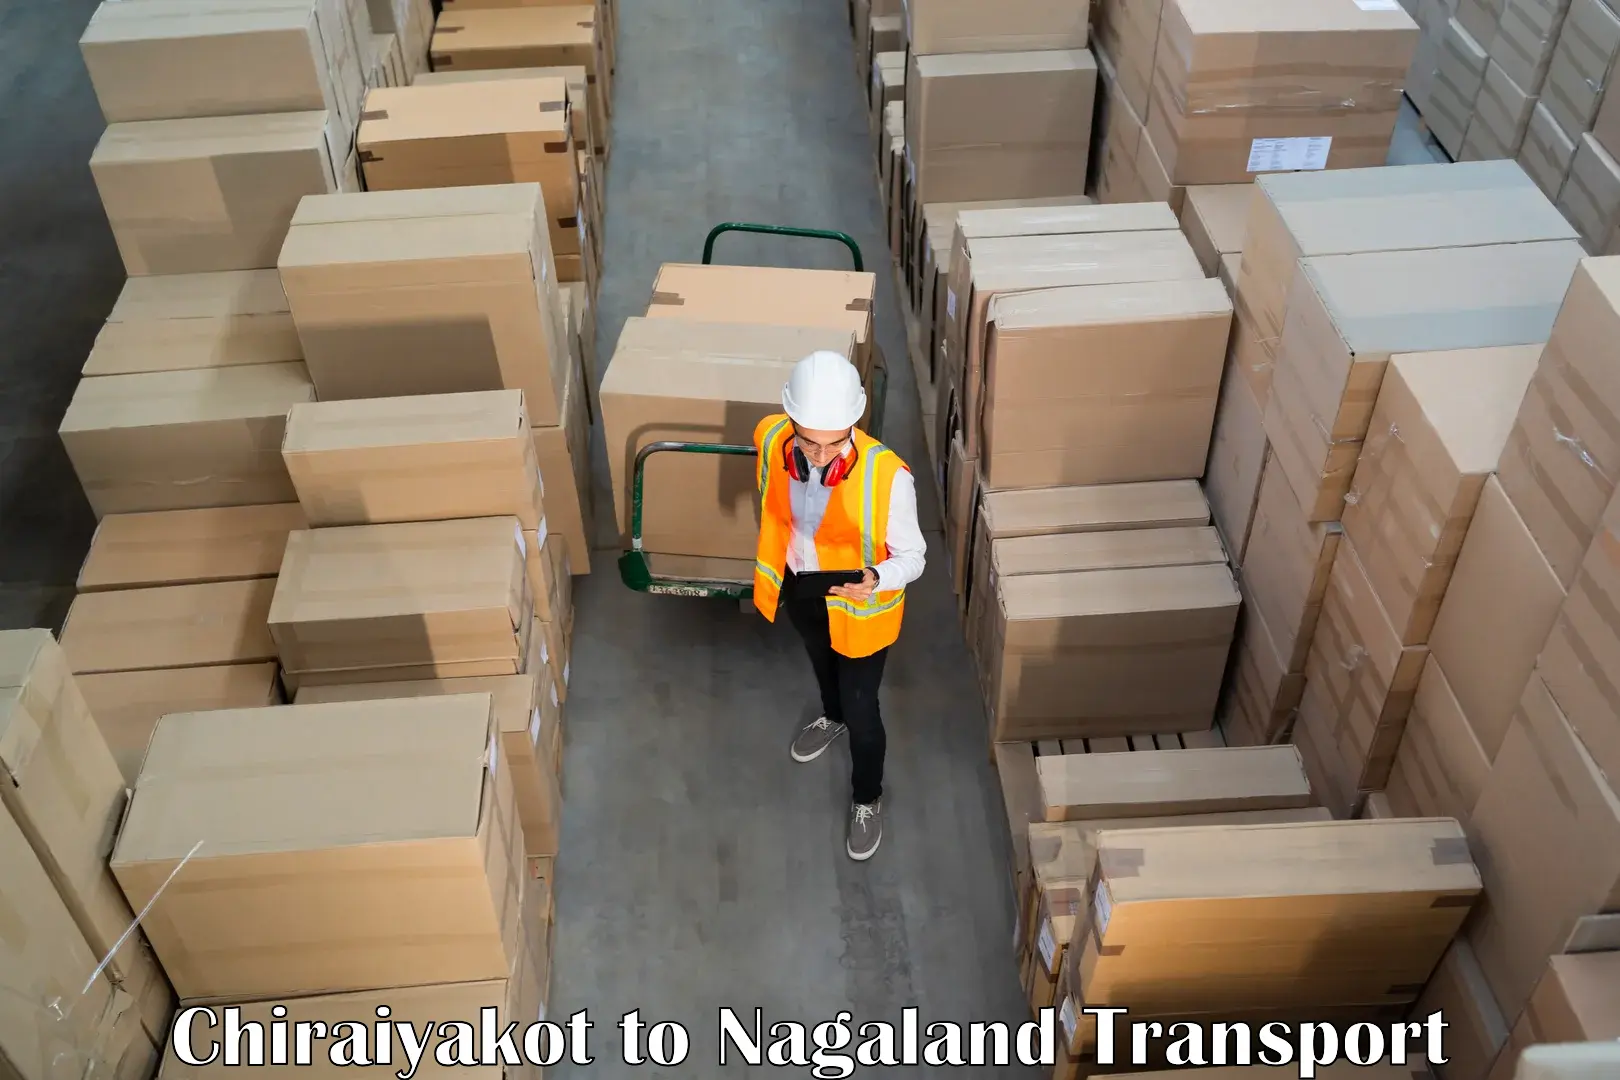 Transport in sharing Chiraiyakot to Nagaland